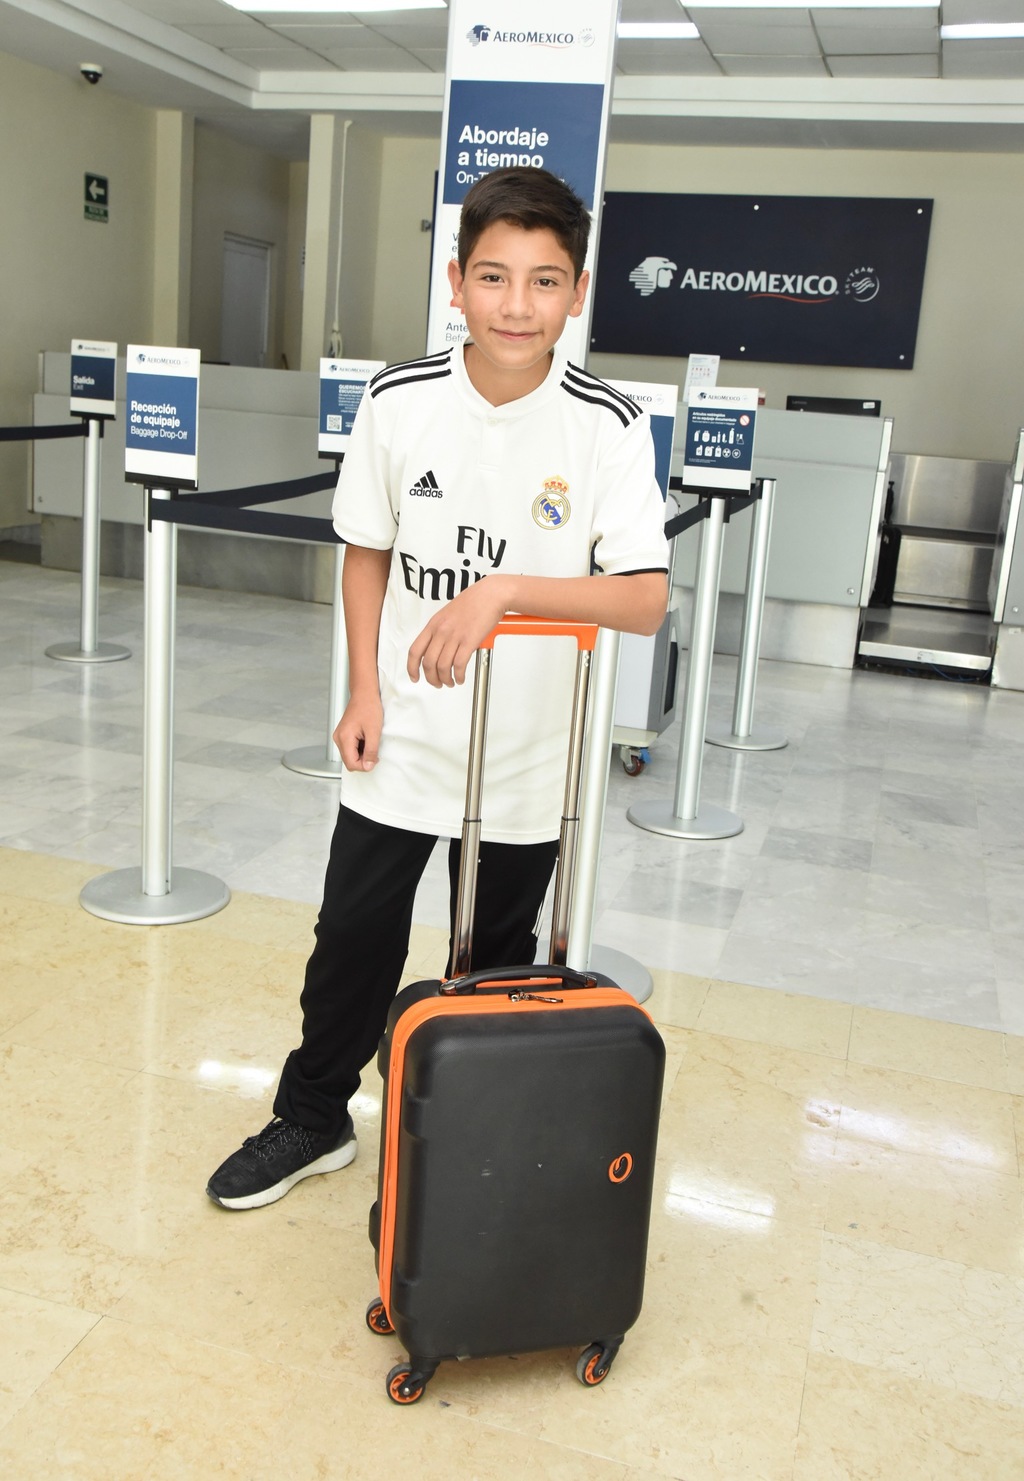 El juvenil futbolista viajó ayer desde Torreón a Madrid con una escala en la Ciudad de México, antes de comenzar una gran experiencia.